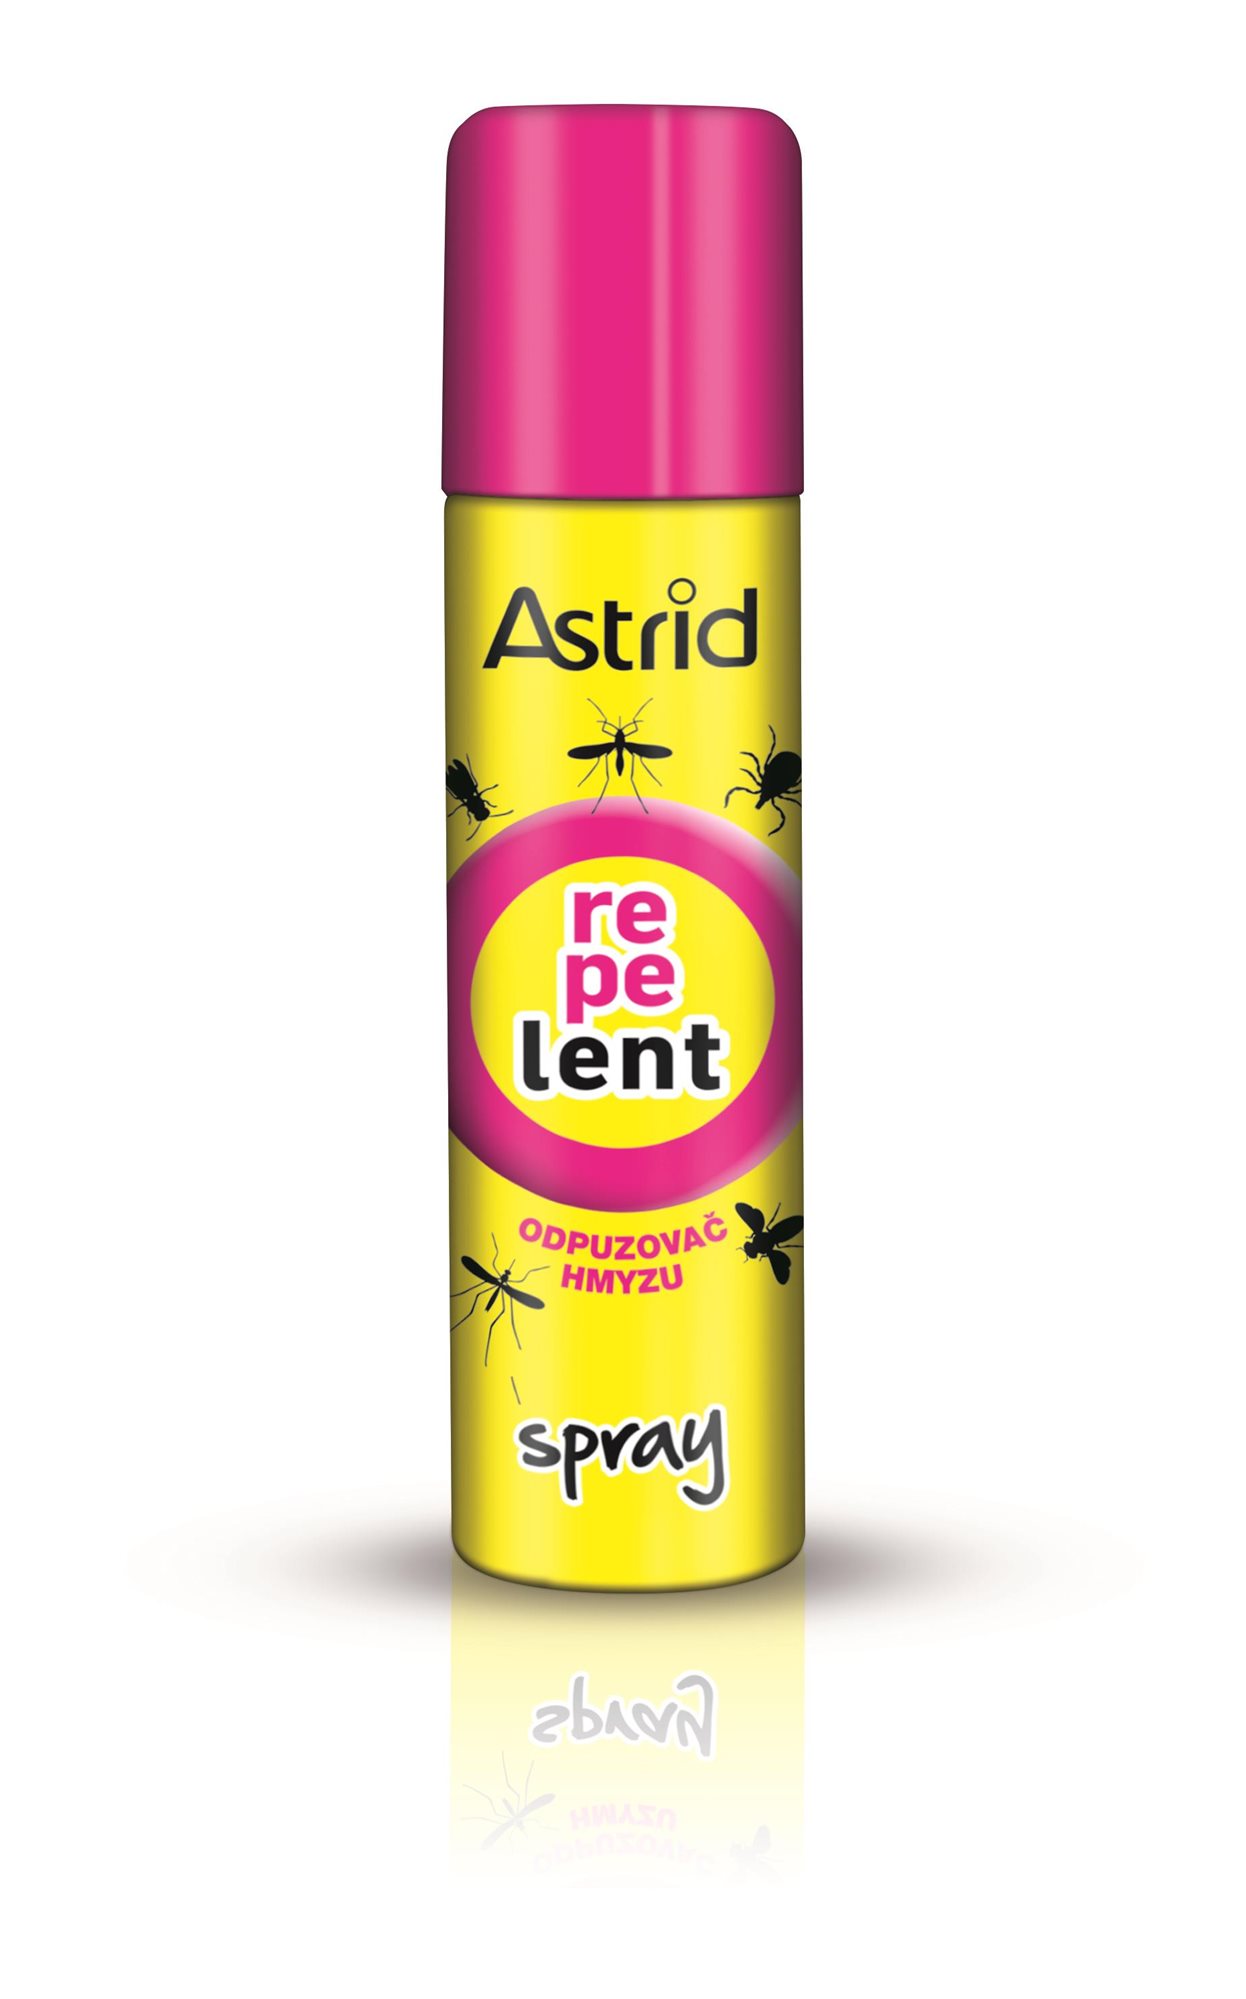 Rovarriasztó ASTRID Rovarriasztó spray 150 ml